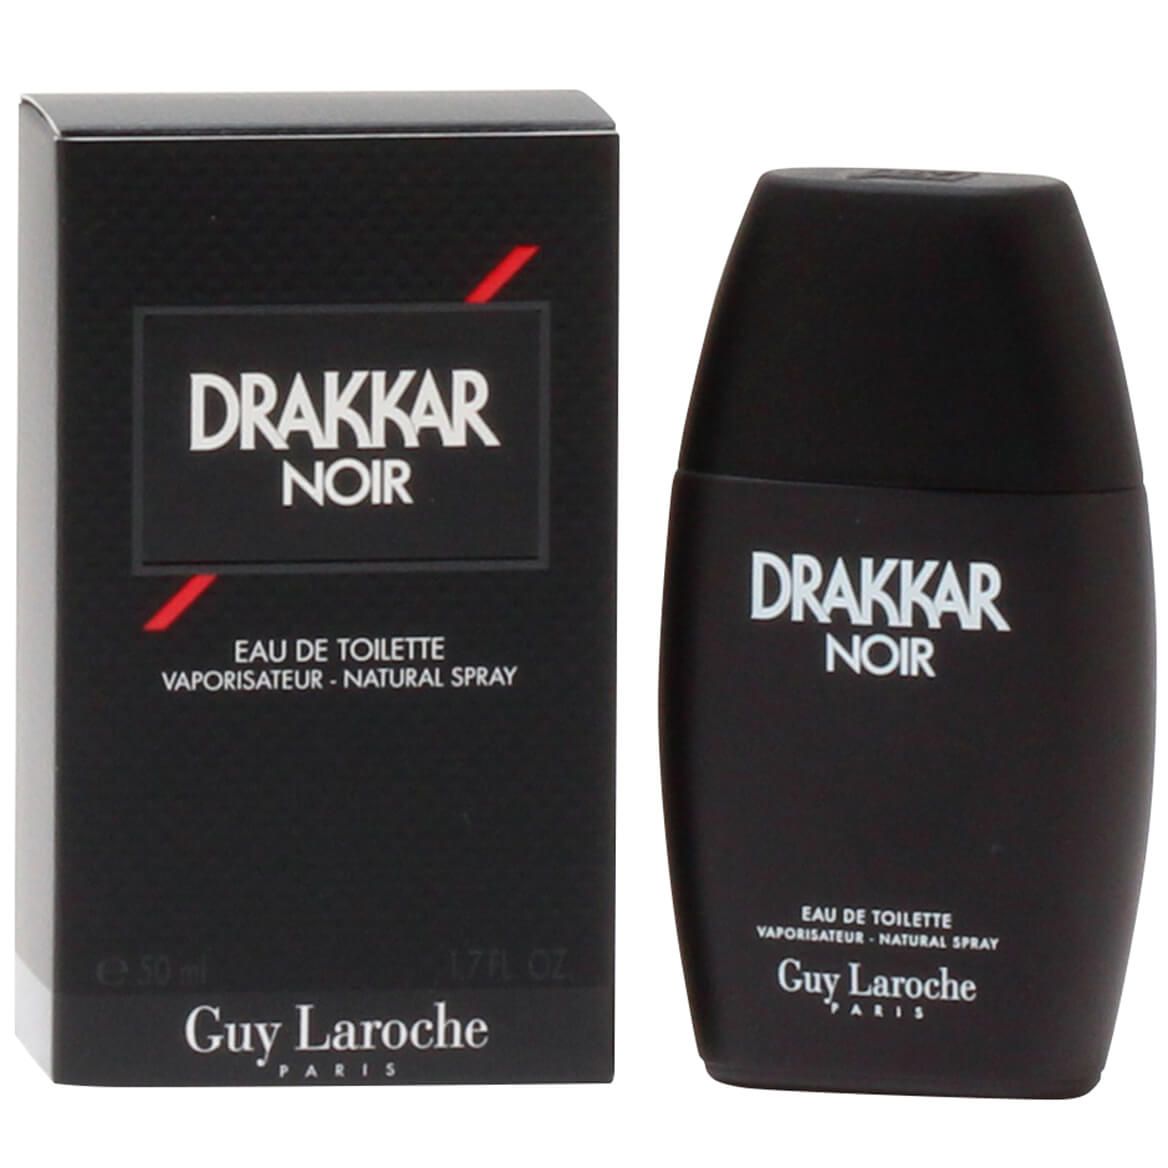 Guy Laroche Drakkar Noir Men, EDT Spray 1.7oz + '-' + 360293